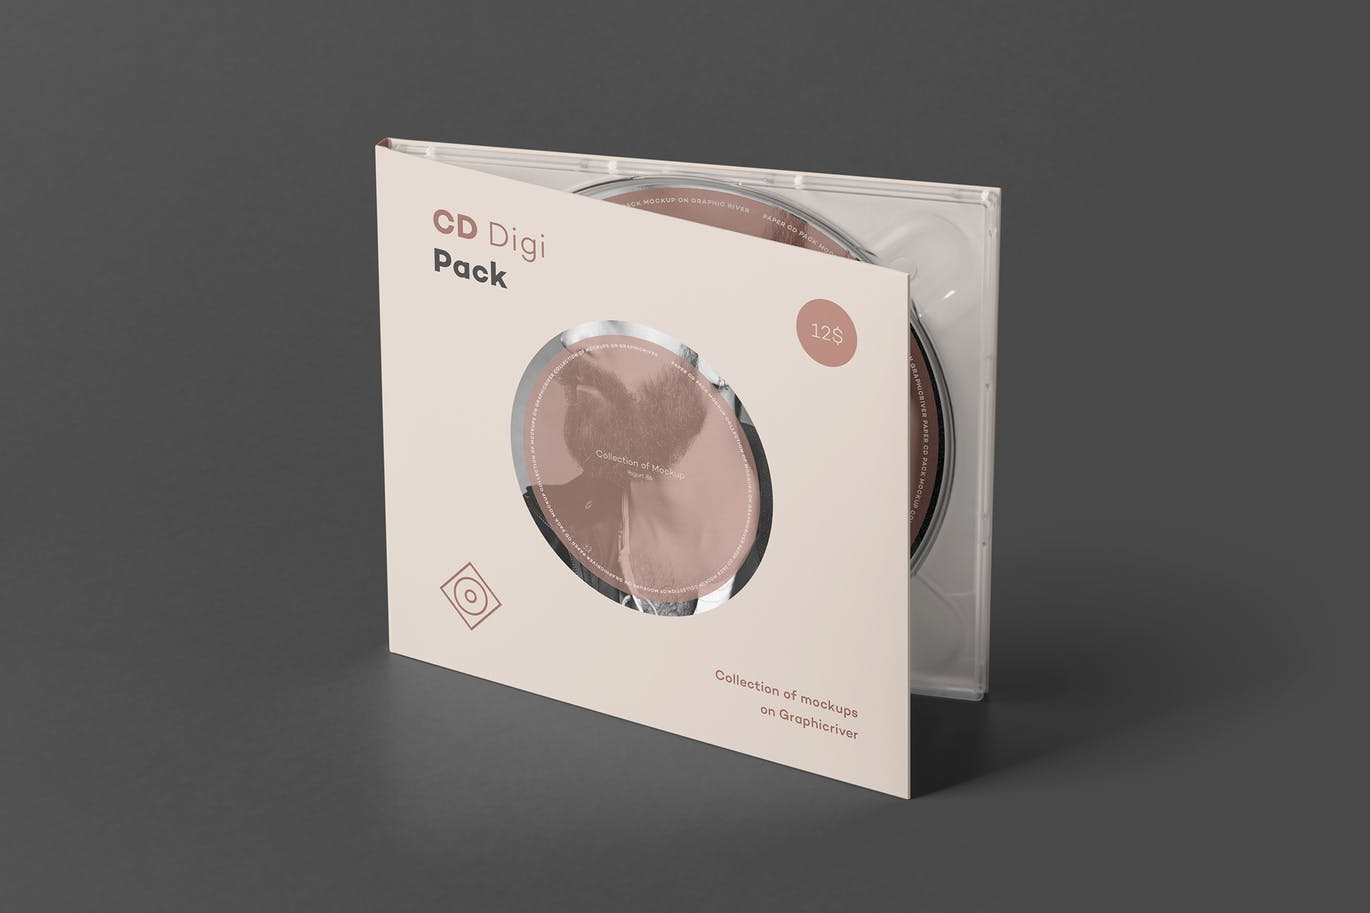 CD光盘包装样机VI样机时尚高端优雅质感的高品质提案设计展示模型mockups设计素材模板